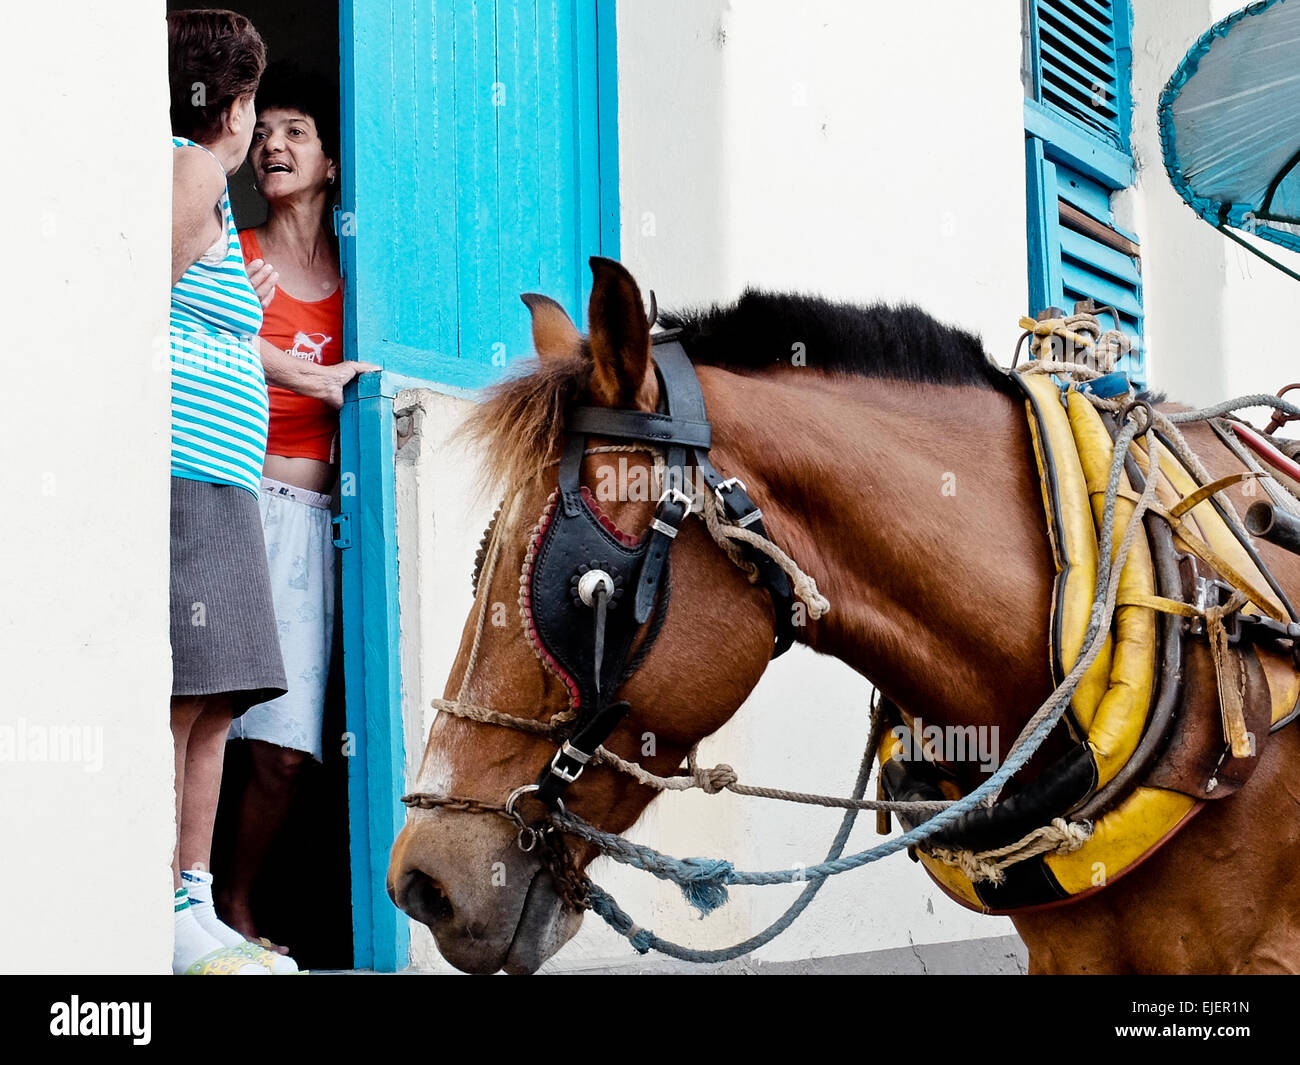 Zwei Frauen stehen und unterhalten sich in der Tür eines Hauses in der 500 Jahre alten Stadt Sancti Spíritus. Kubaner verbringen viel Zeit auf ihre Türen und viele Aktivitäten stattfinden an der Haustür und Street, wodurch ein Gefühl der Gemeinschaft mit ihren Nachbarn. Wohnwelten zeigen deutlich die Armut, düster und Mängel so häufig in der kubanischen Leben. Stockfoto